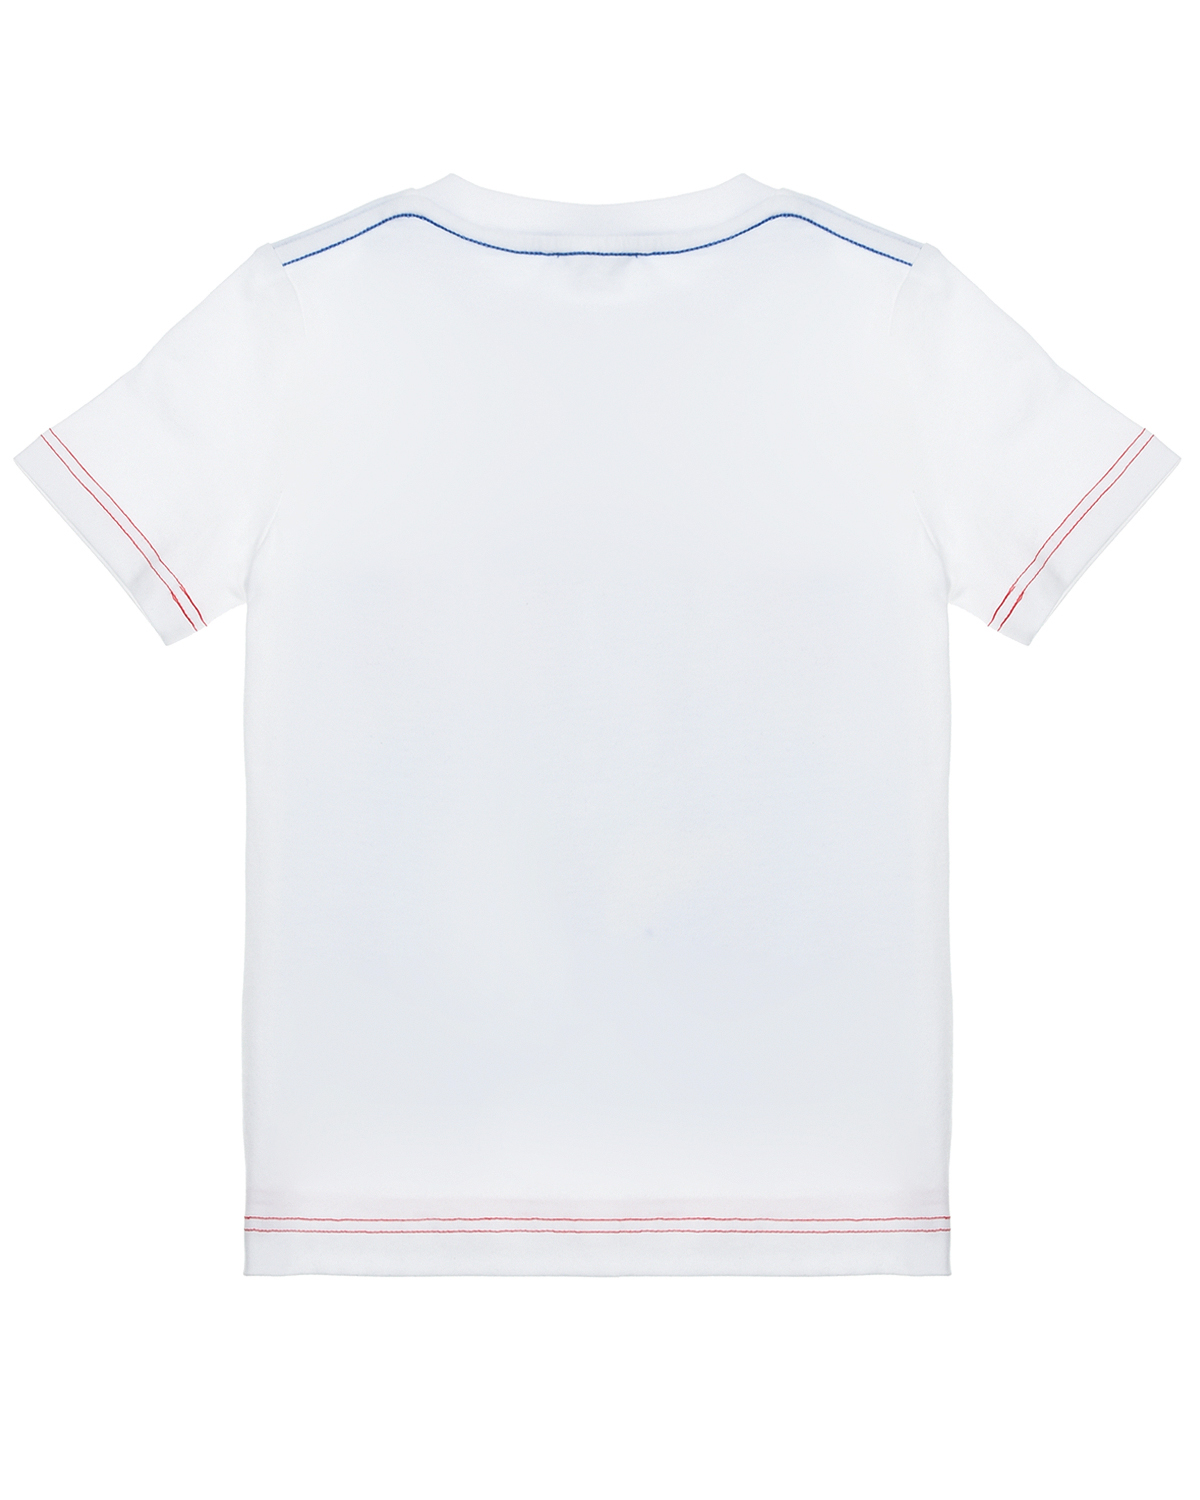 Белая футболка с принтом "комикс" Marc Jacobs (The) детская, размер 92, цвет белый Белая футболка с принтом "комикс" Marc Jacobs (The) детская - фото 2